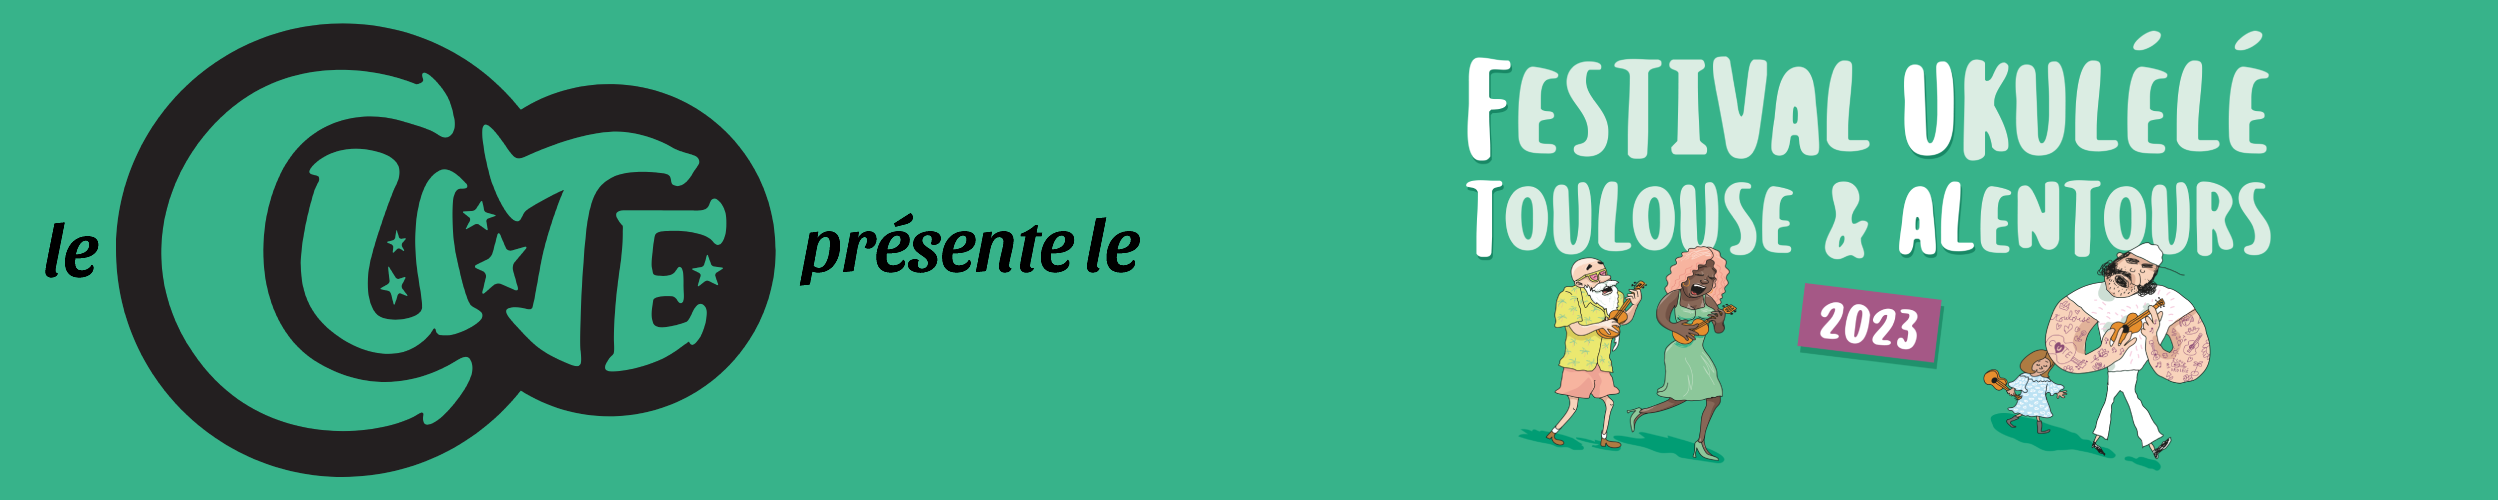 Bannière le CUTE présente le Festival de Ukulele de Toulouse 2023